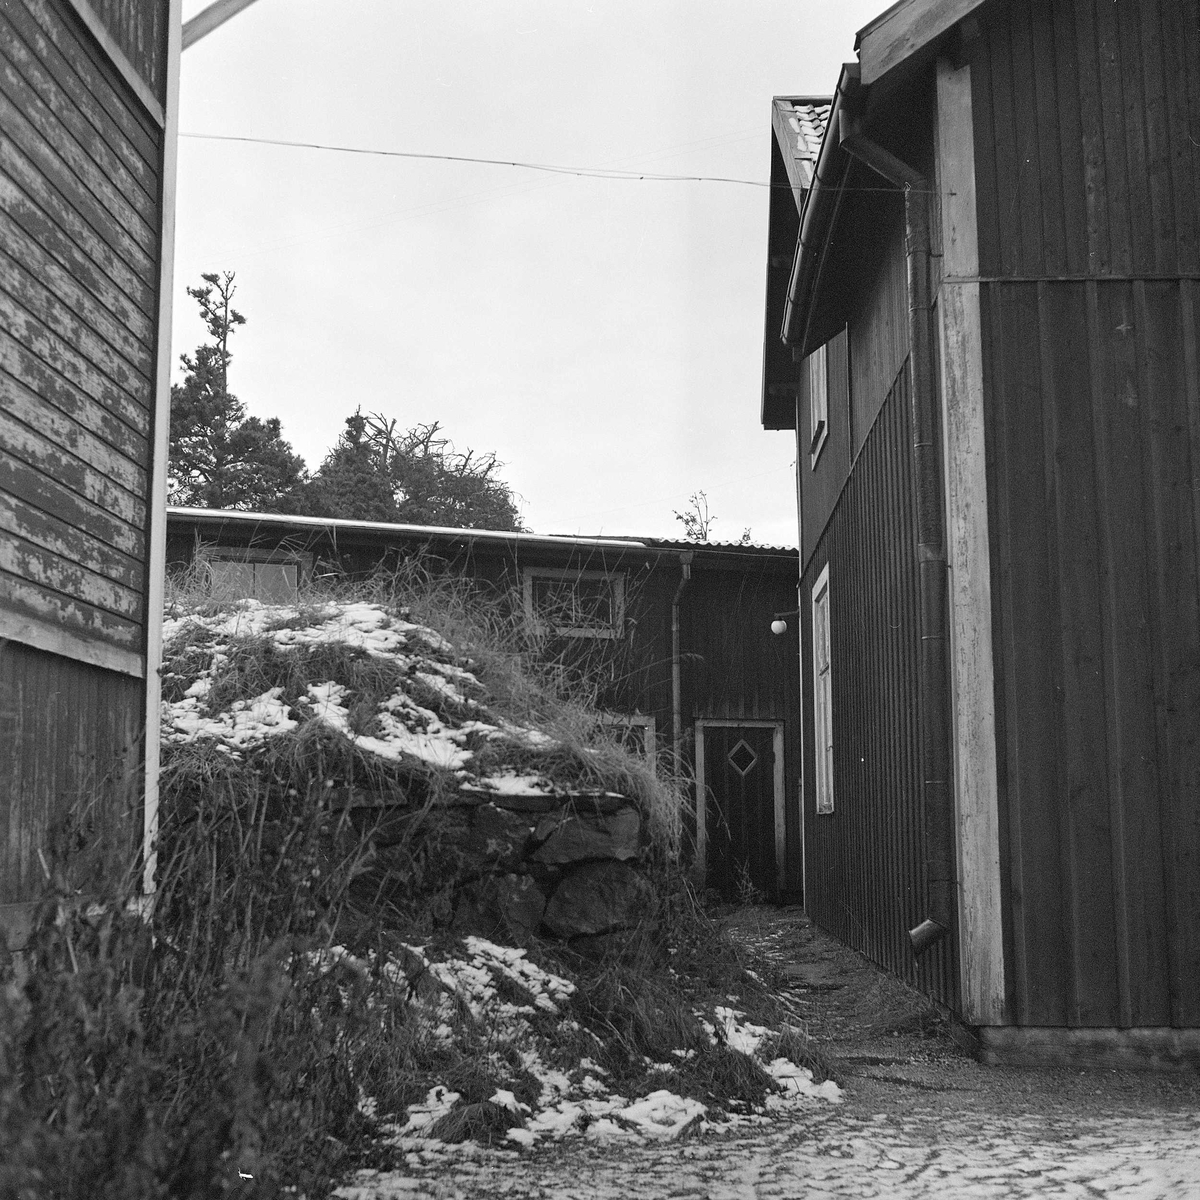 Vy mellan bostadshusen mot uthuslängan, med jordkällaren i mitten. Vy mot väster. Gårdens byggnader revs ca 1950 - 1953